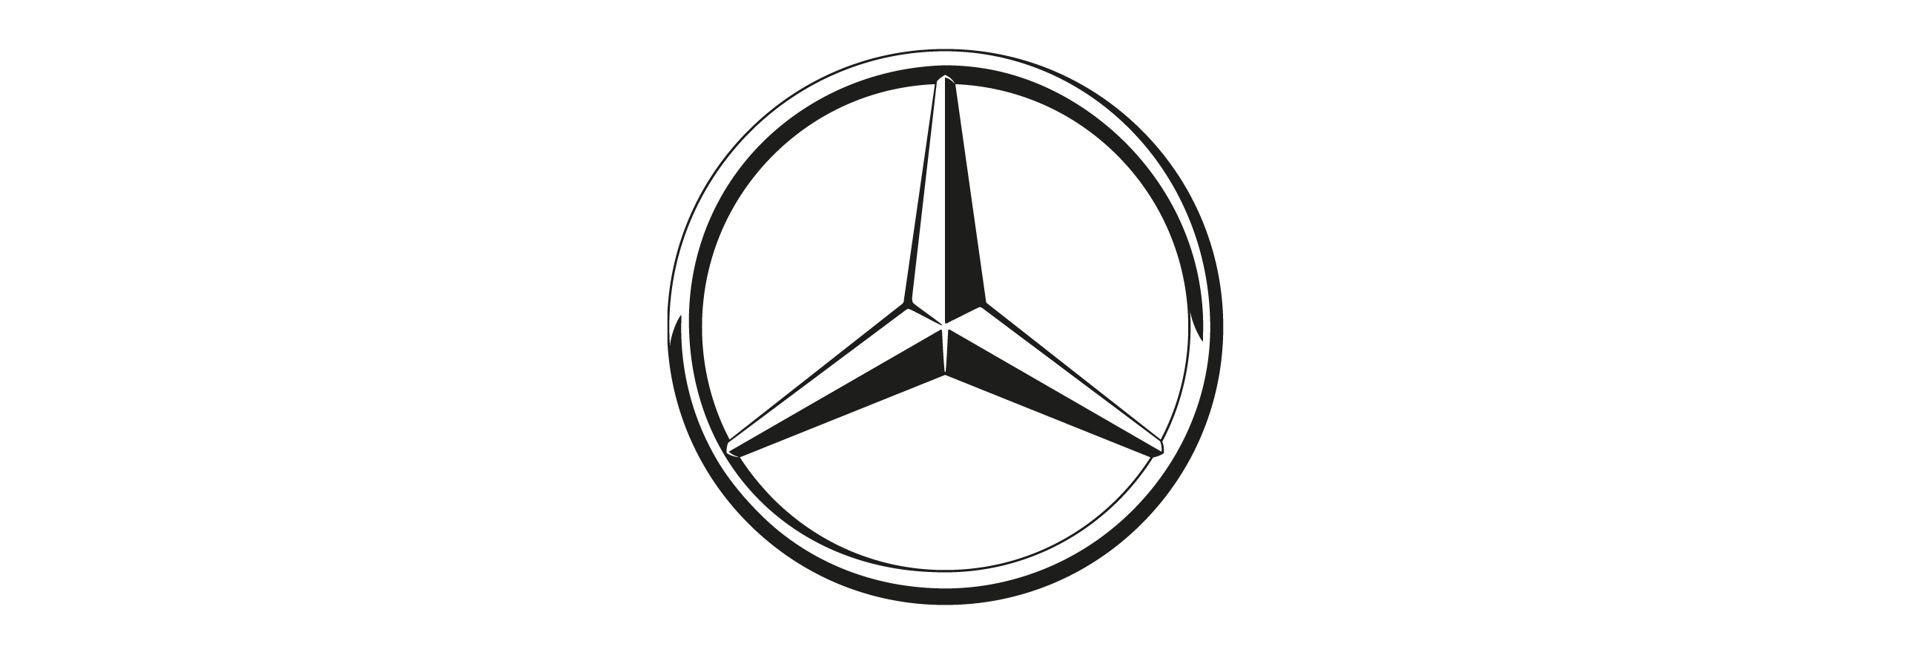 Nagyszabású fejlesztéssel gyorsítja az elektromos hajtásra átállást a Mercedes-Benz - VIDEÓRIPORT